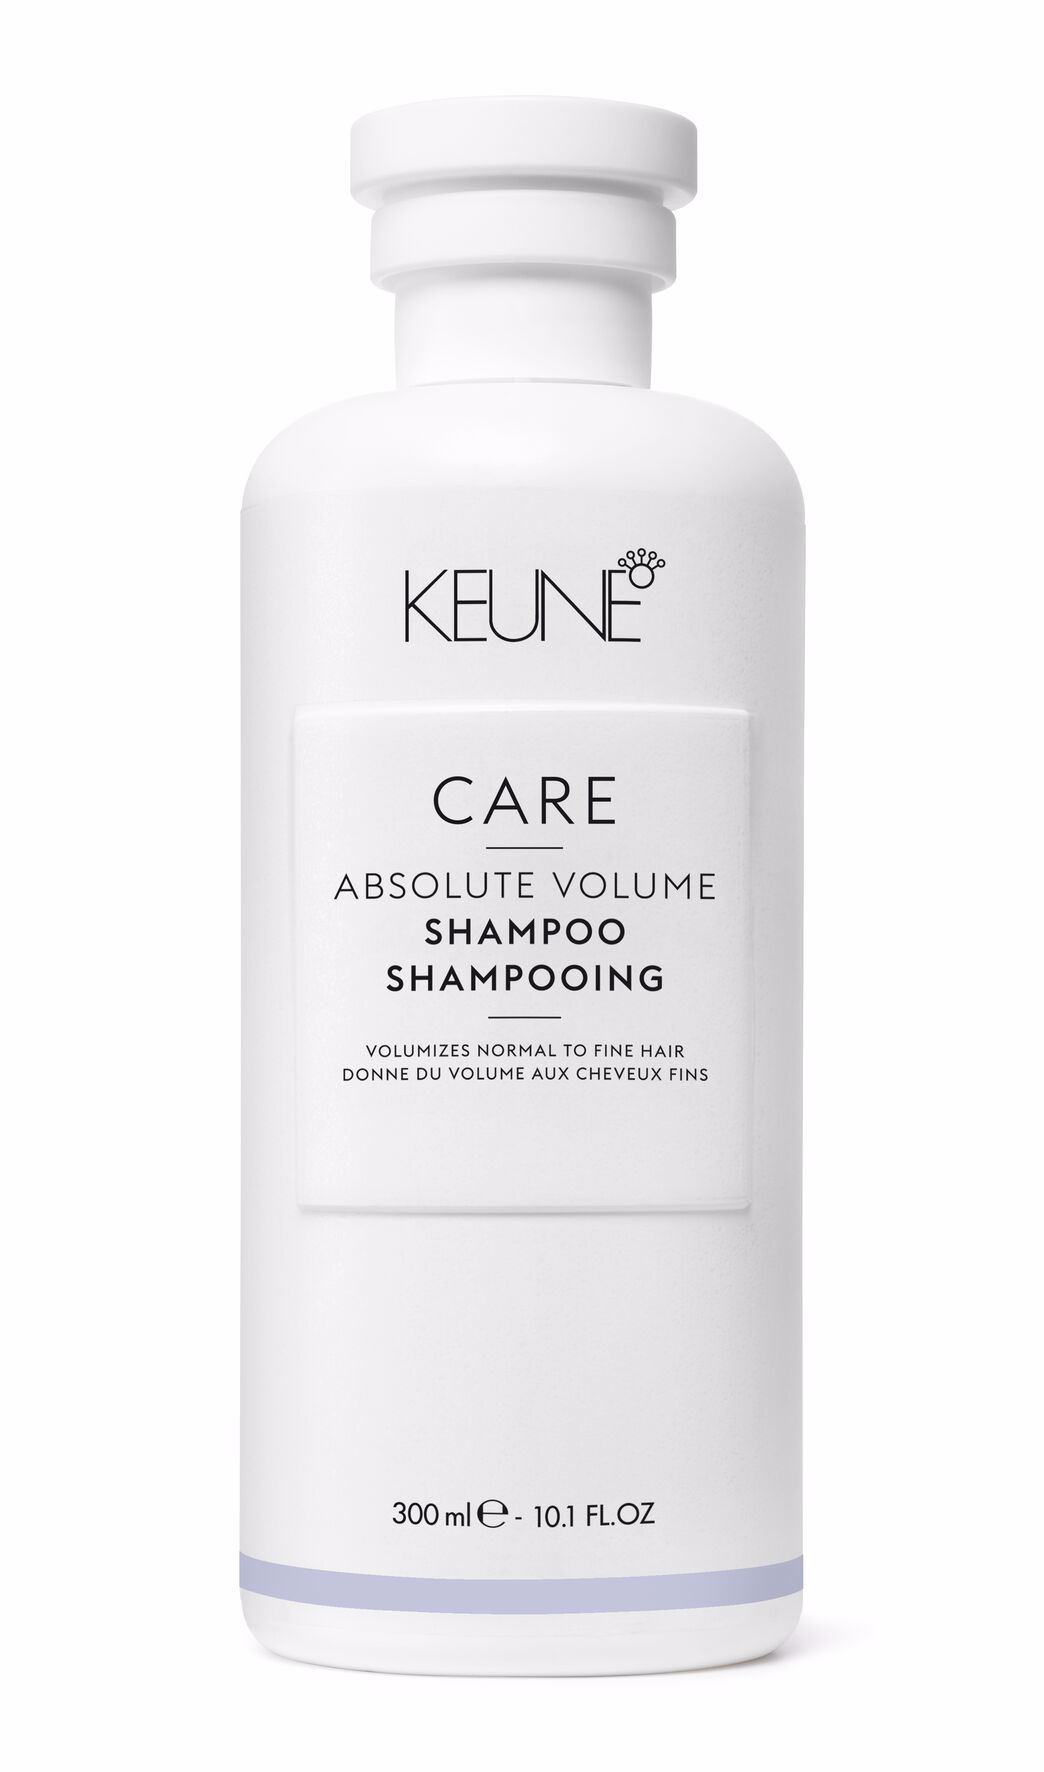 Le Absolute Volume Shampoo donne du volume aux cheveux sans les alourdir. Ce soin capillaire contient du Pro-vitamine B5 et des protéines de blé qui soulèvent les cheveux dans la direction souhaitée.